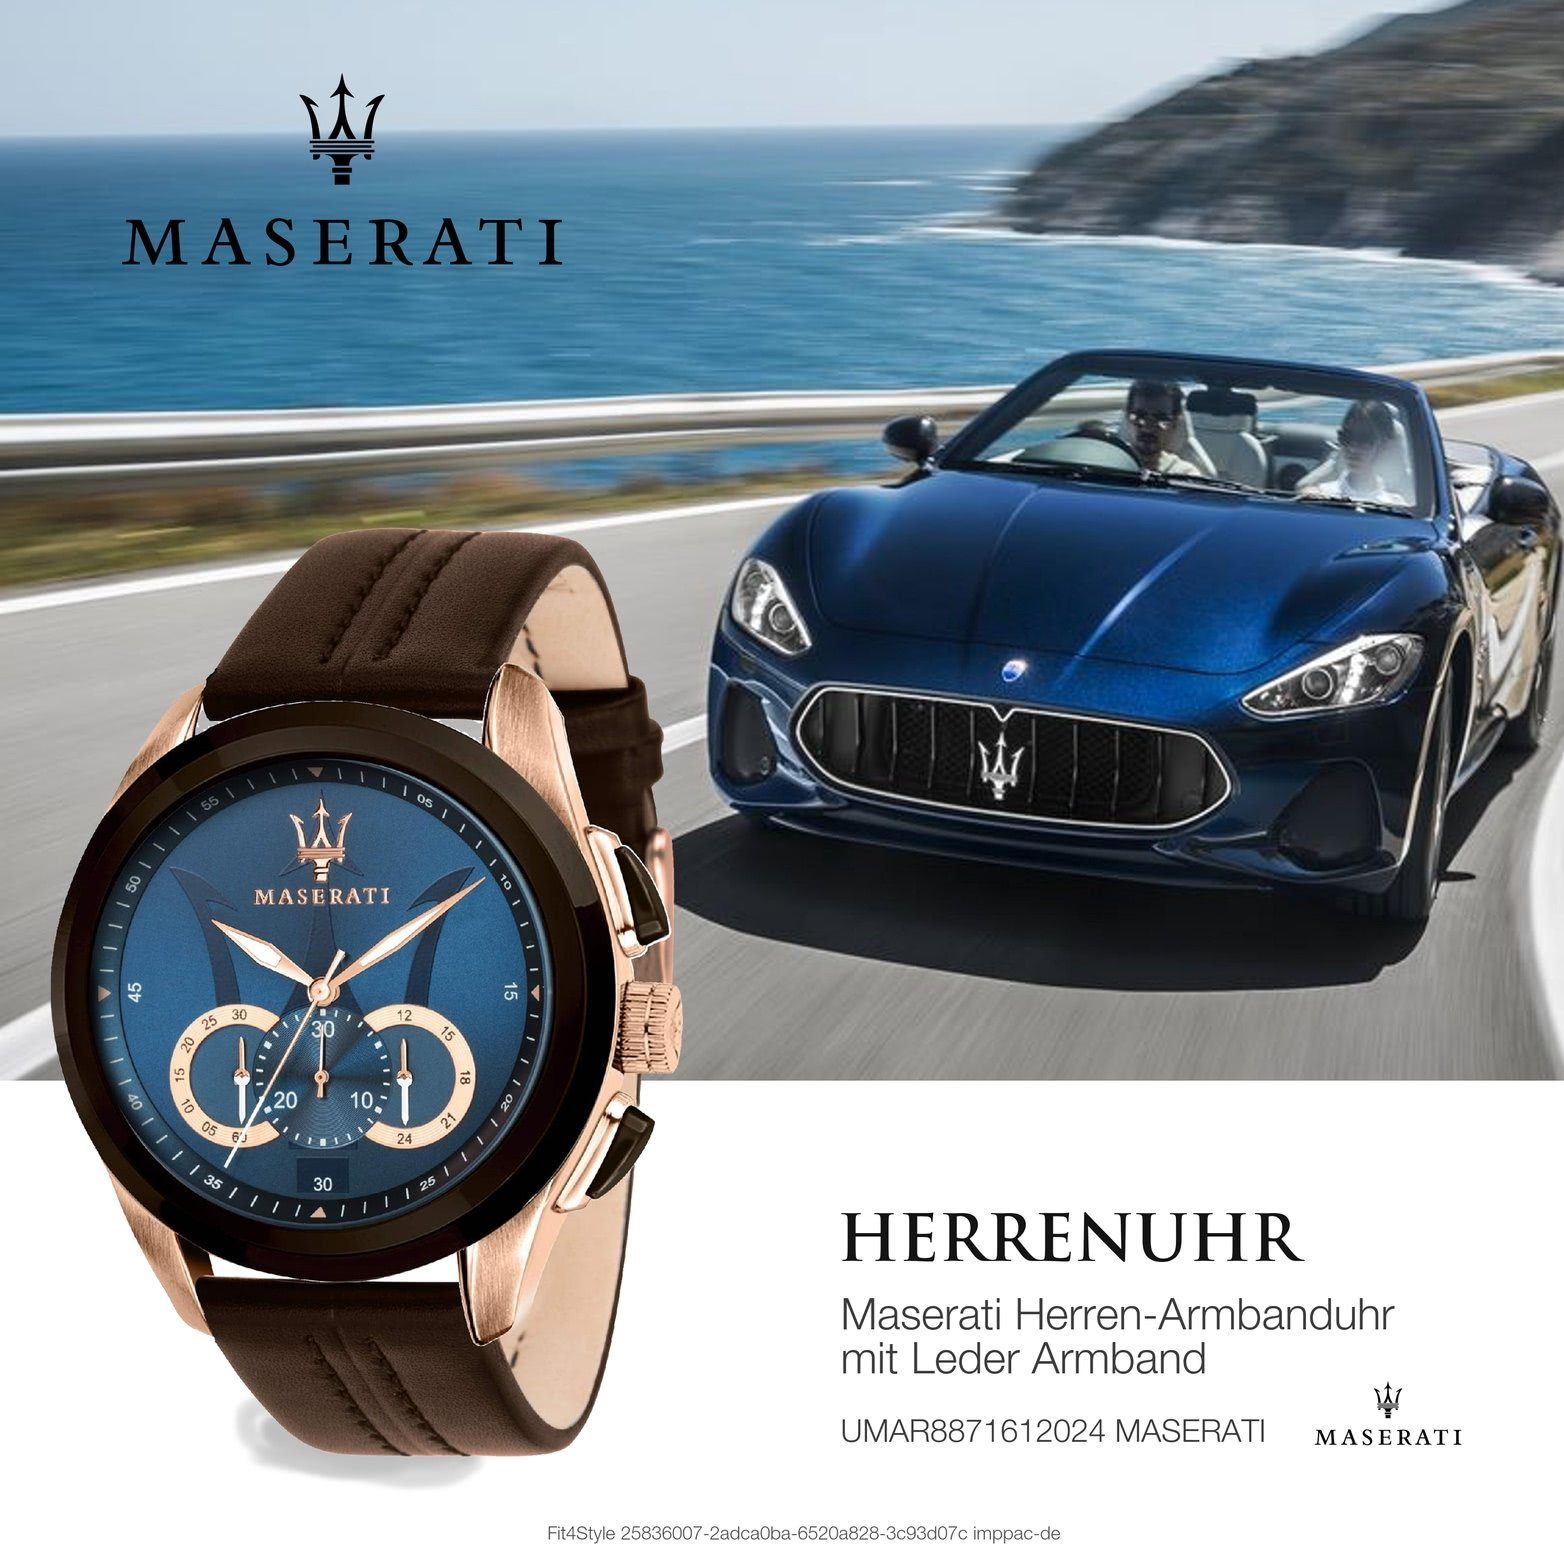 MASERATI Chronograph 55x45mm) Leder Armband-Uhr, groß blau Herrenuhr Maserati (ca. rundes Gehäuse, Lederarmband